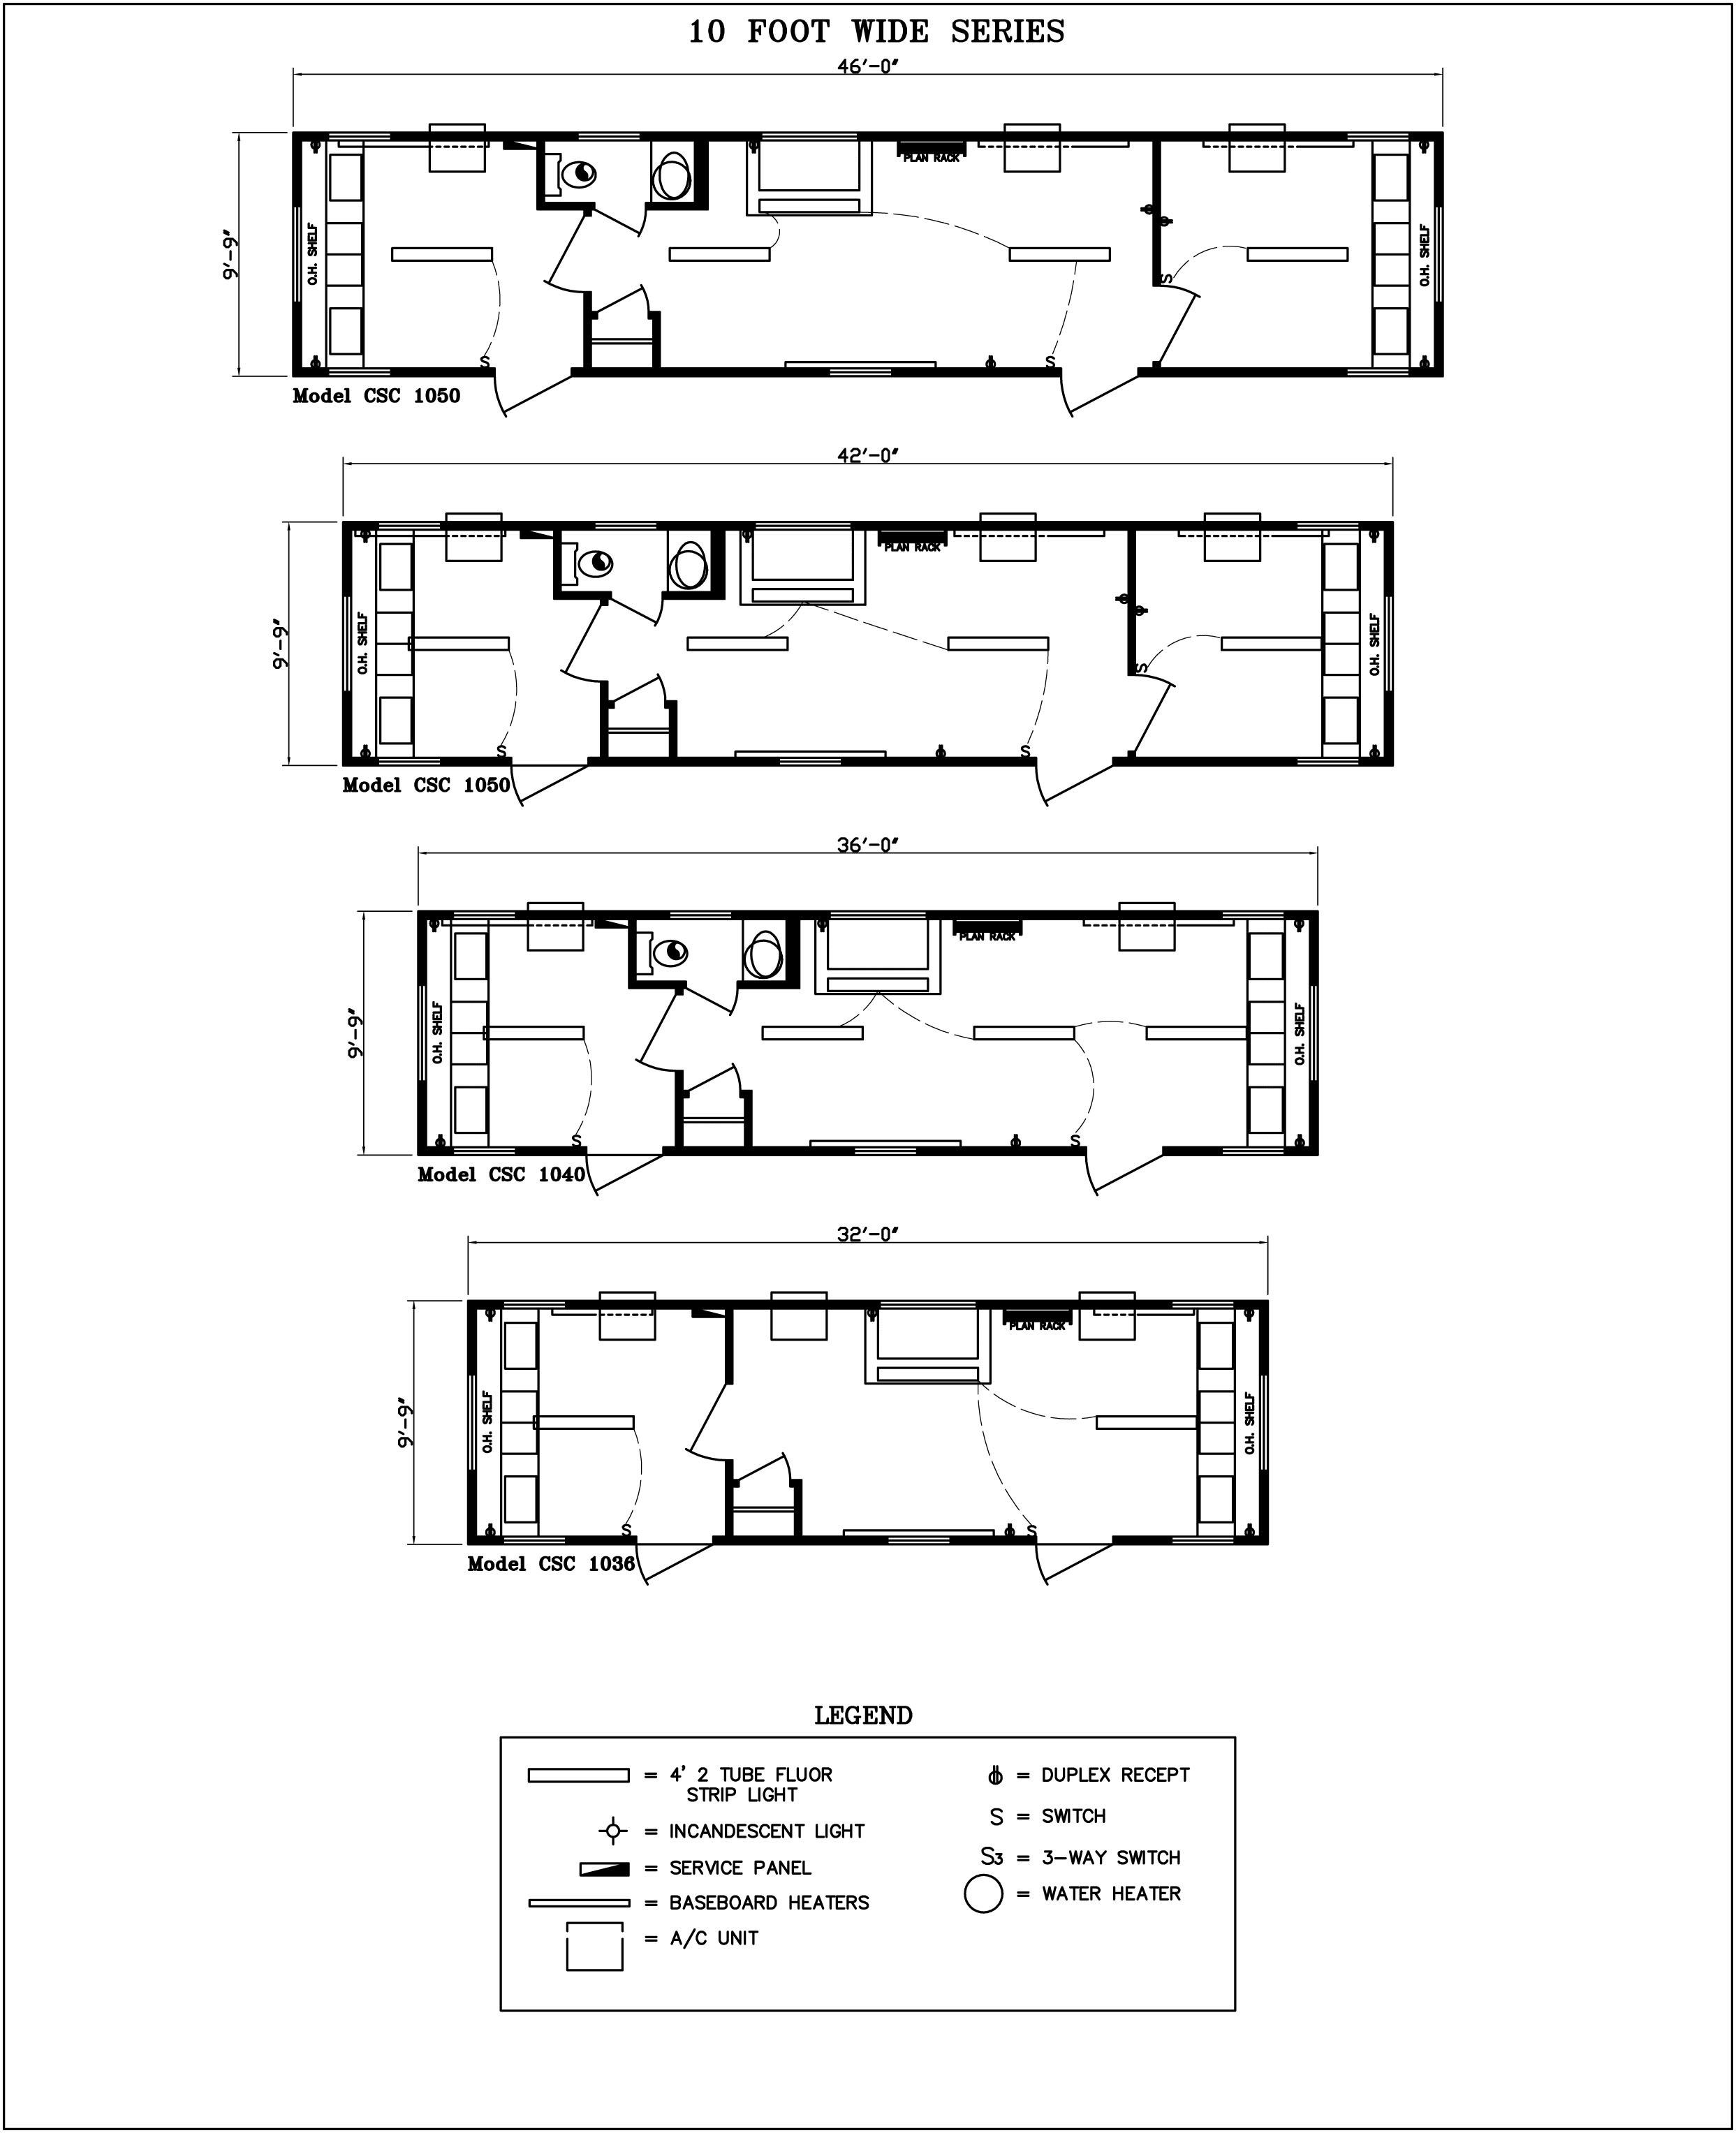 2 Storey Office Building Floor Plan